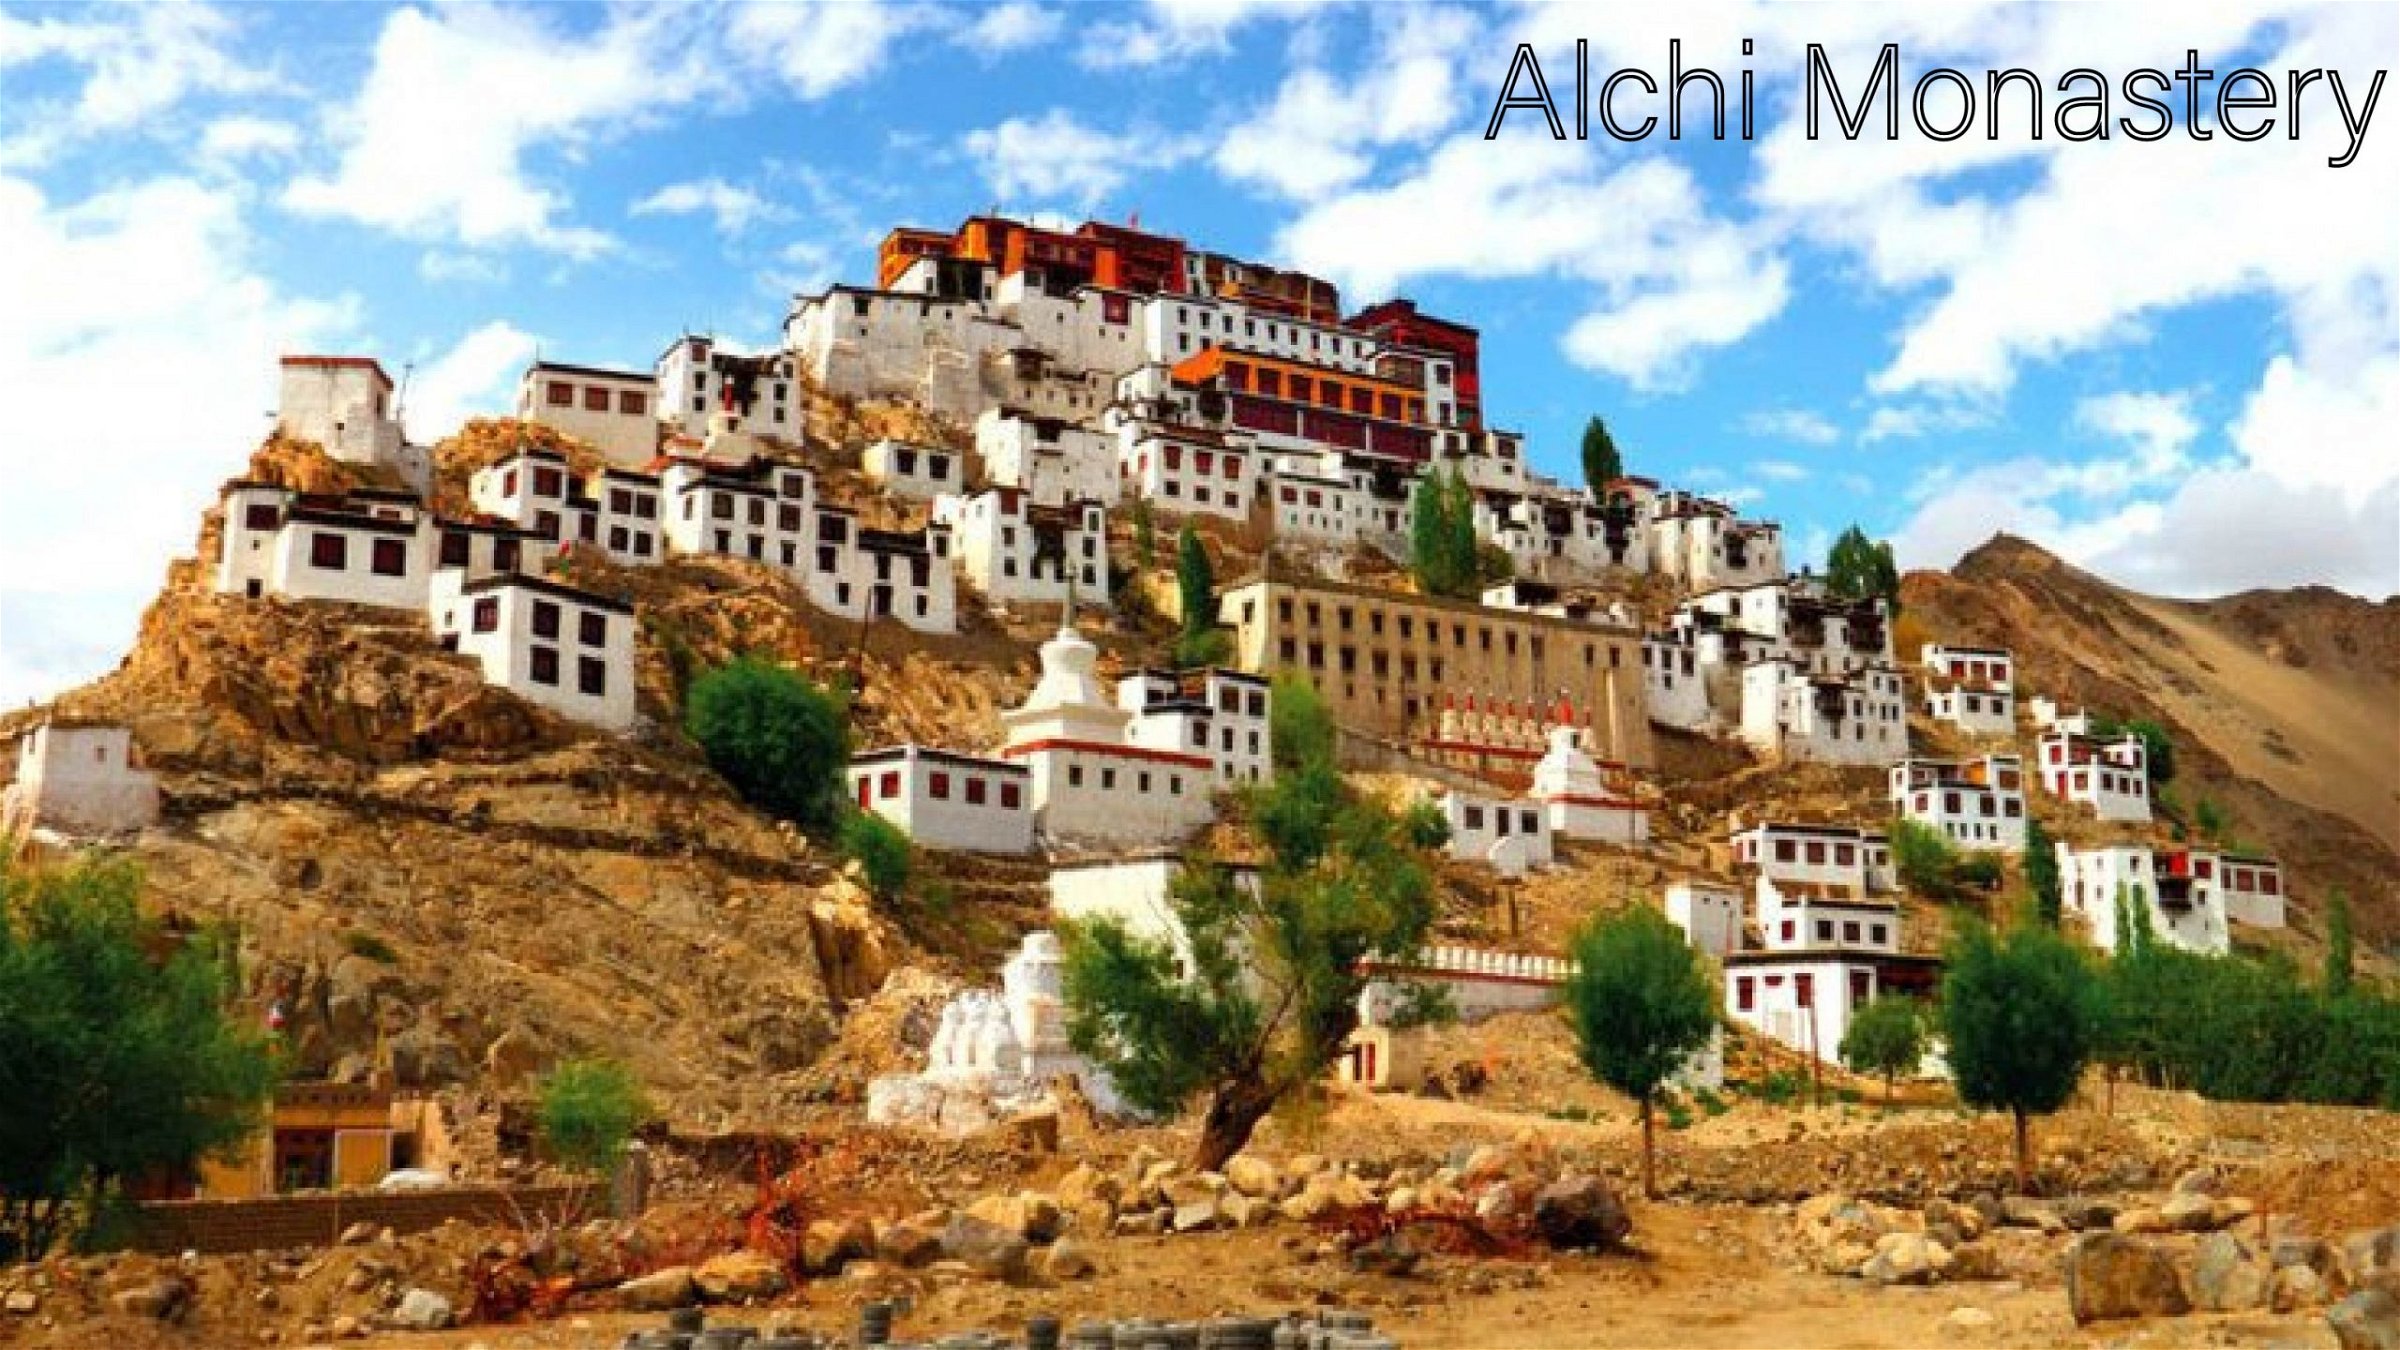 Alchi Monastery - Choskhor, Leh